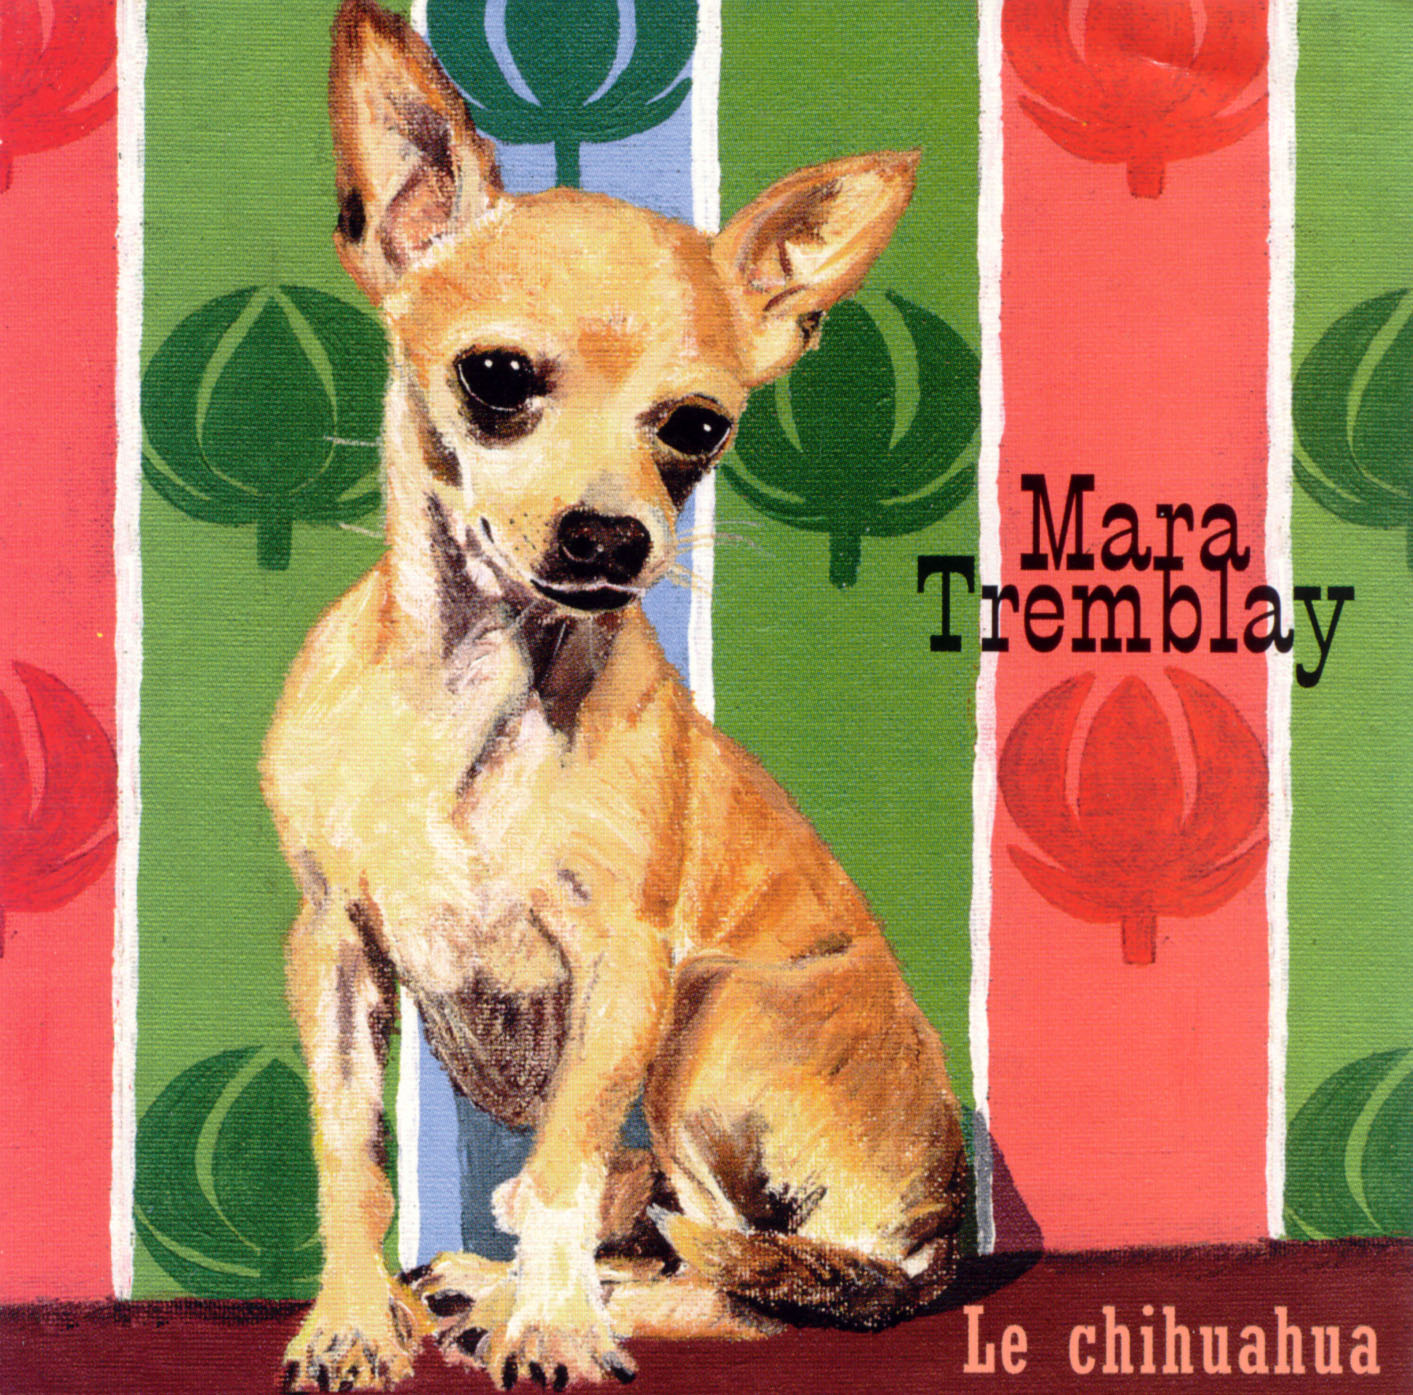 Le Chihuahua